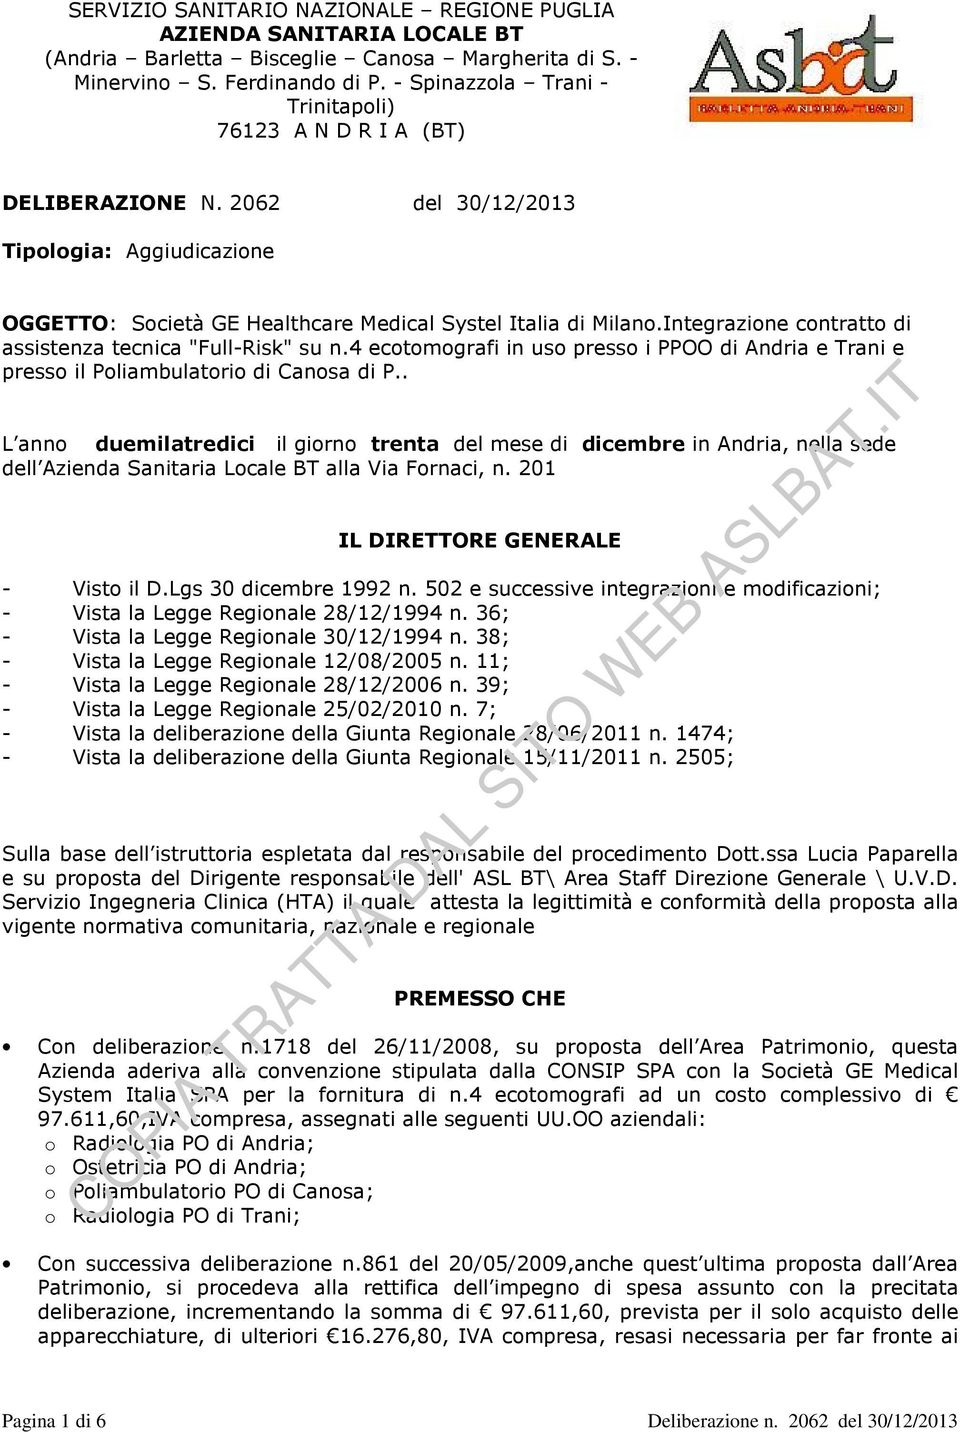 Integrazione contratto di assistenza tecnica "Full-Risk" su n.4 ecotomografi in uso presso i PPOO di Andria e Trani e presso il Poliambulatorio di Canosa di P.